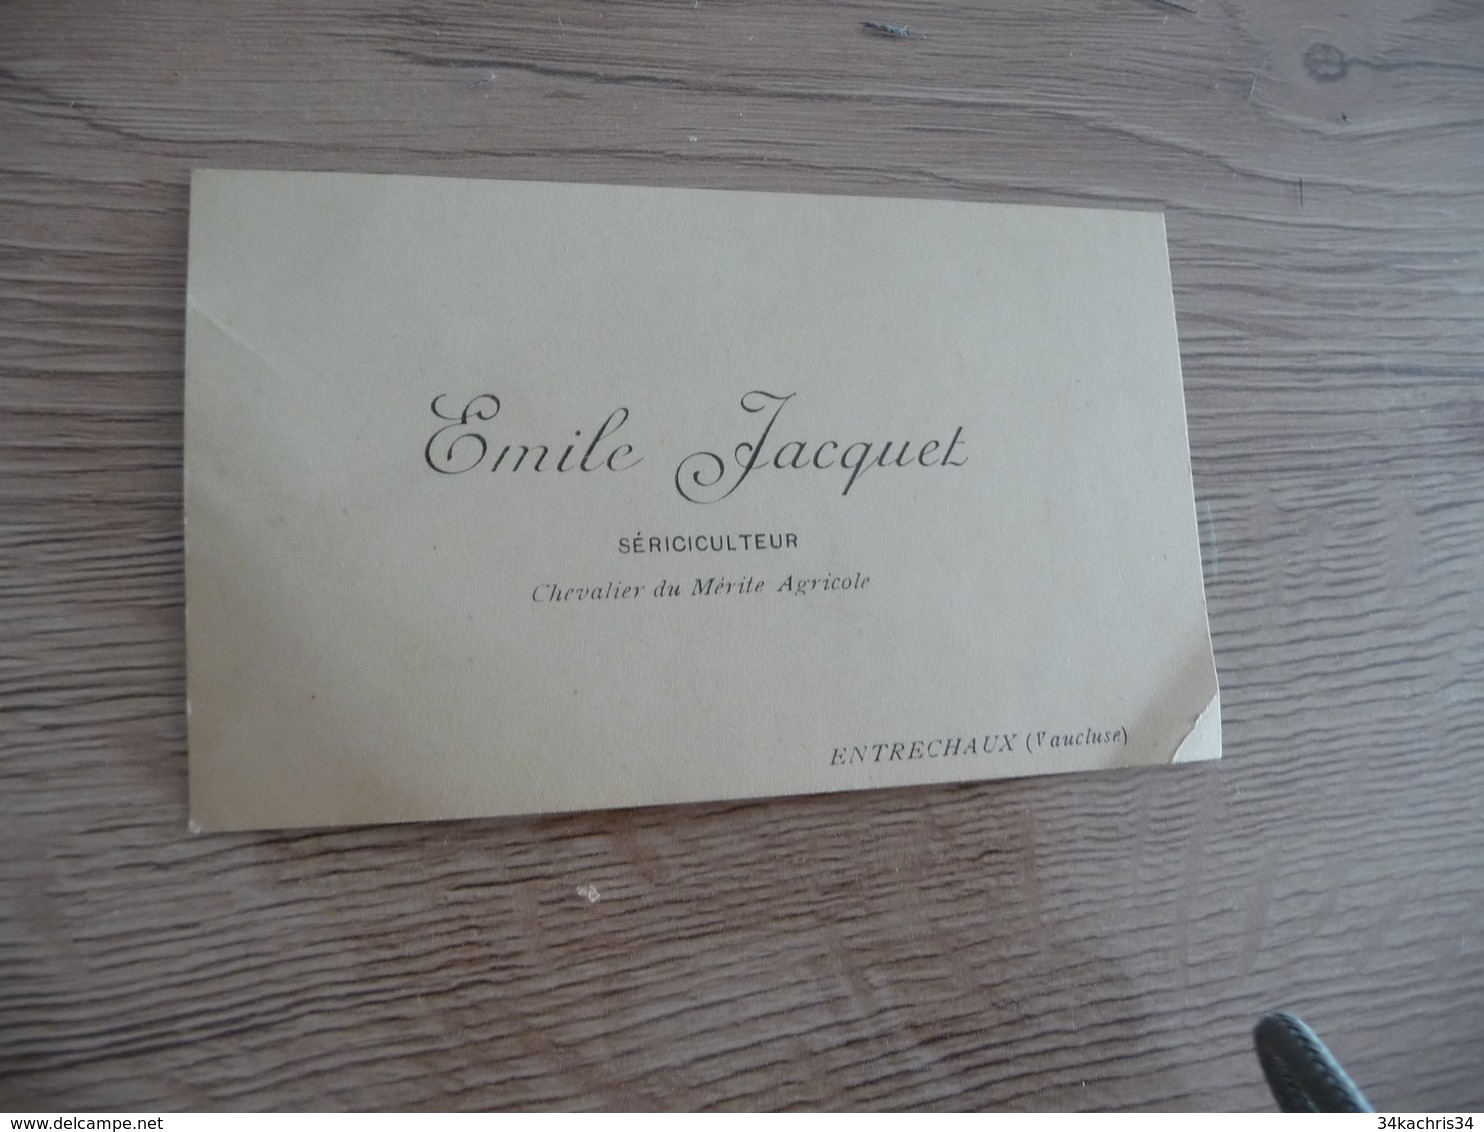 Carte De Visite Emile Jacquet Sériculteur Soie Entrechaux Vaucluse - Visiting Cards